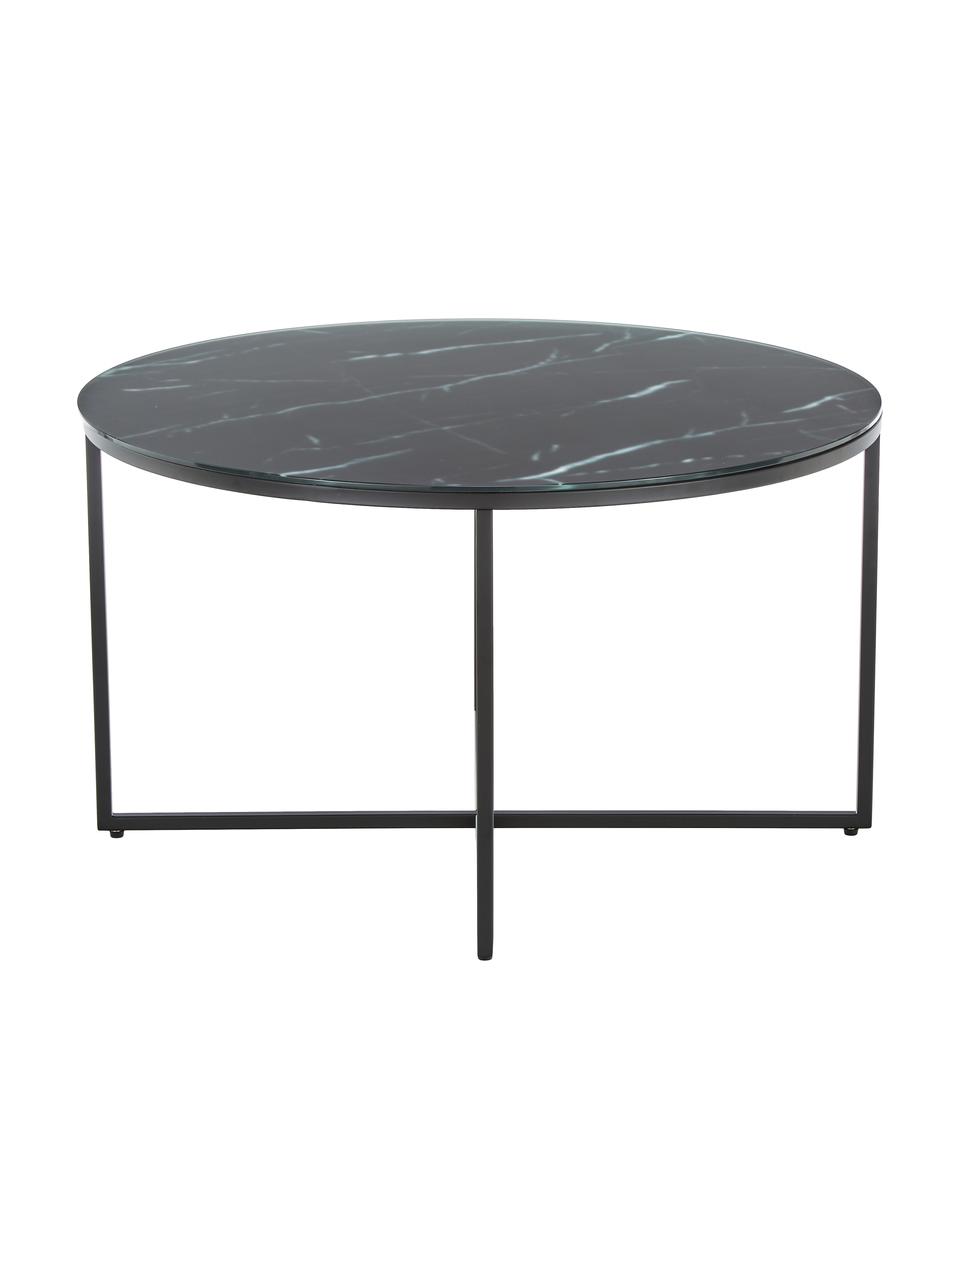 Okrúhly konferenčný stolík so sklenenou doskou s mramorovým vzhľadom Antigua, Mramorový vzhľad, čierna, Ø 80 cm